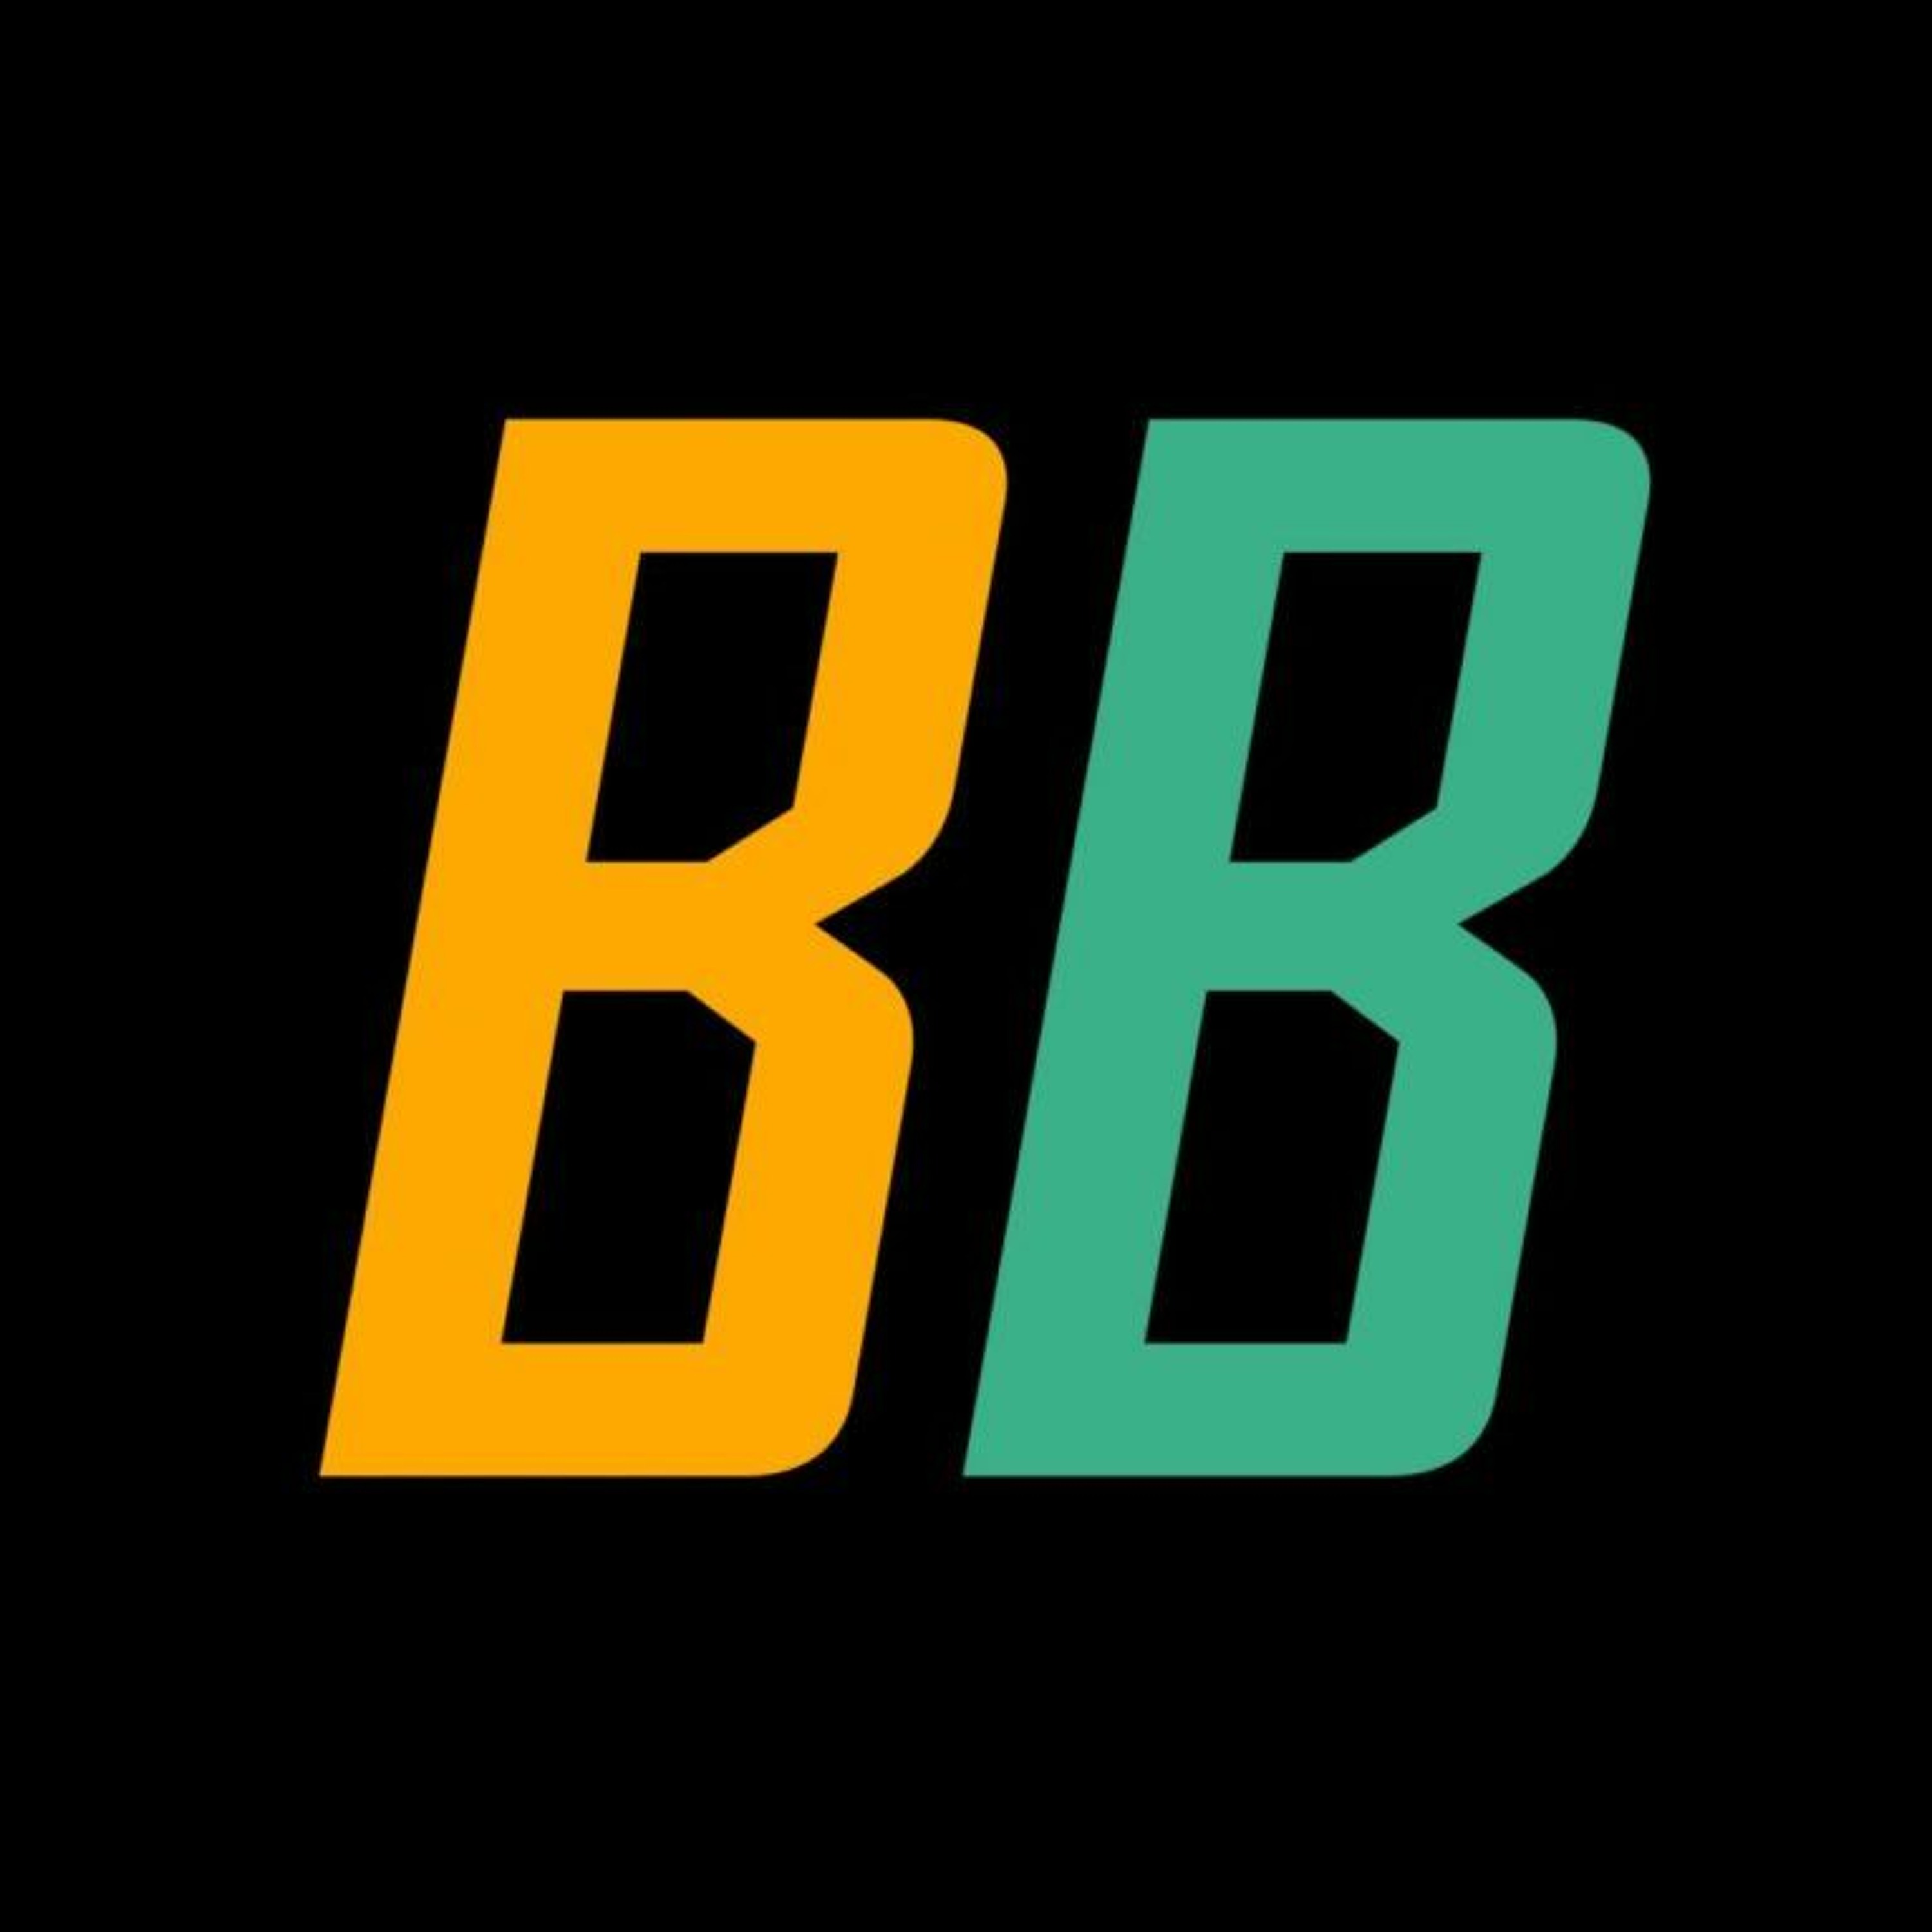 BB Pro: Így indíts consulting bizniszt - 1. rész - Rövidített összefoglaló